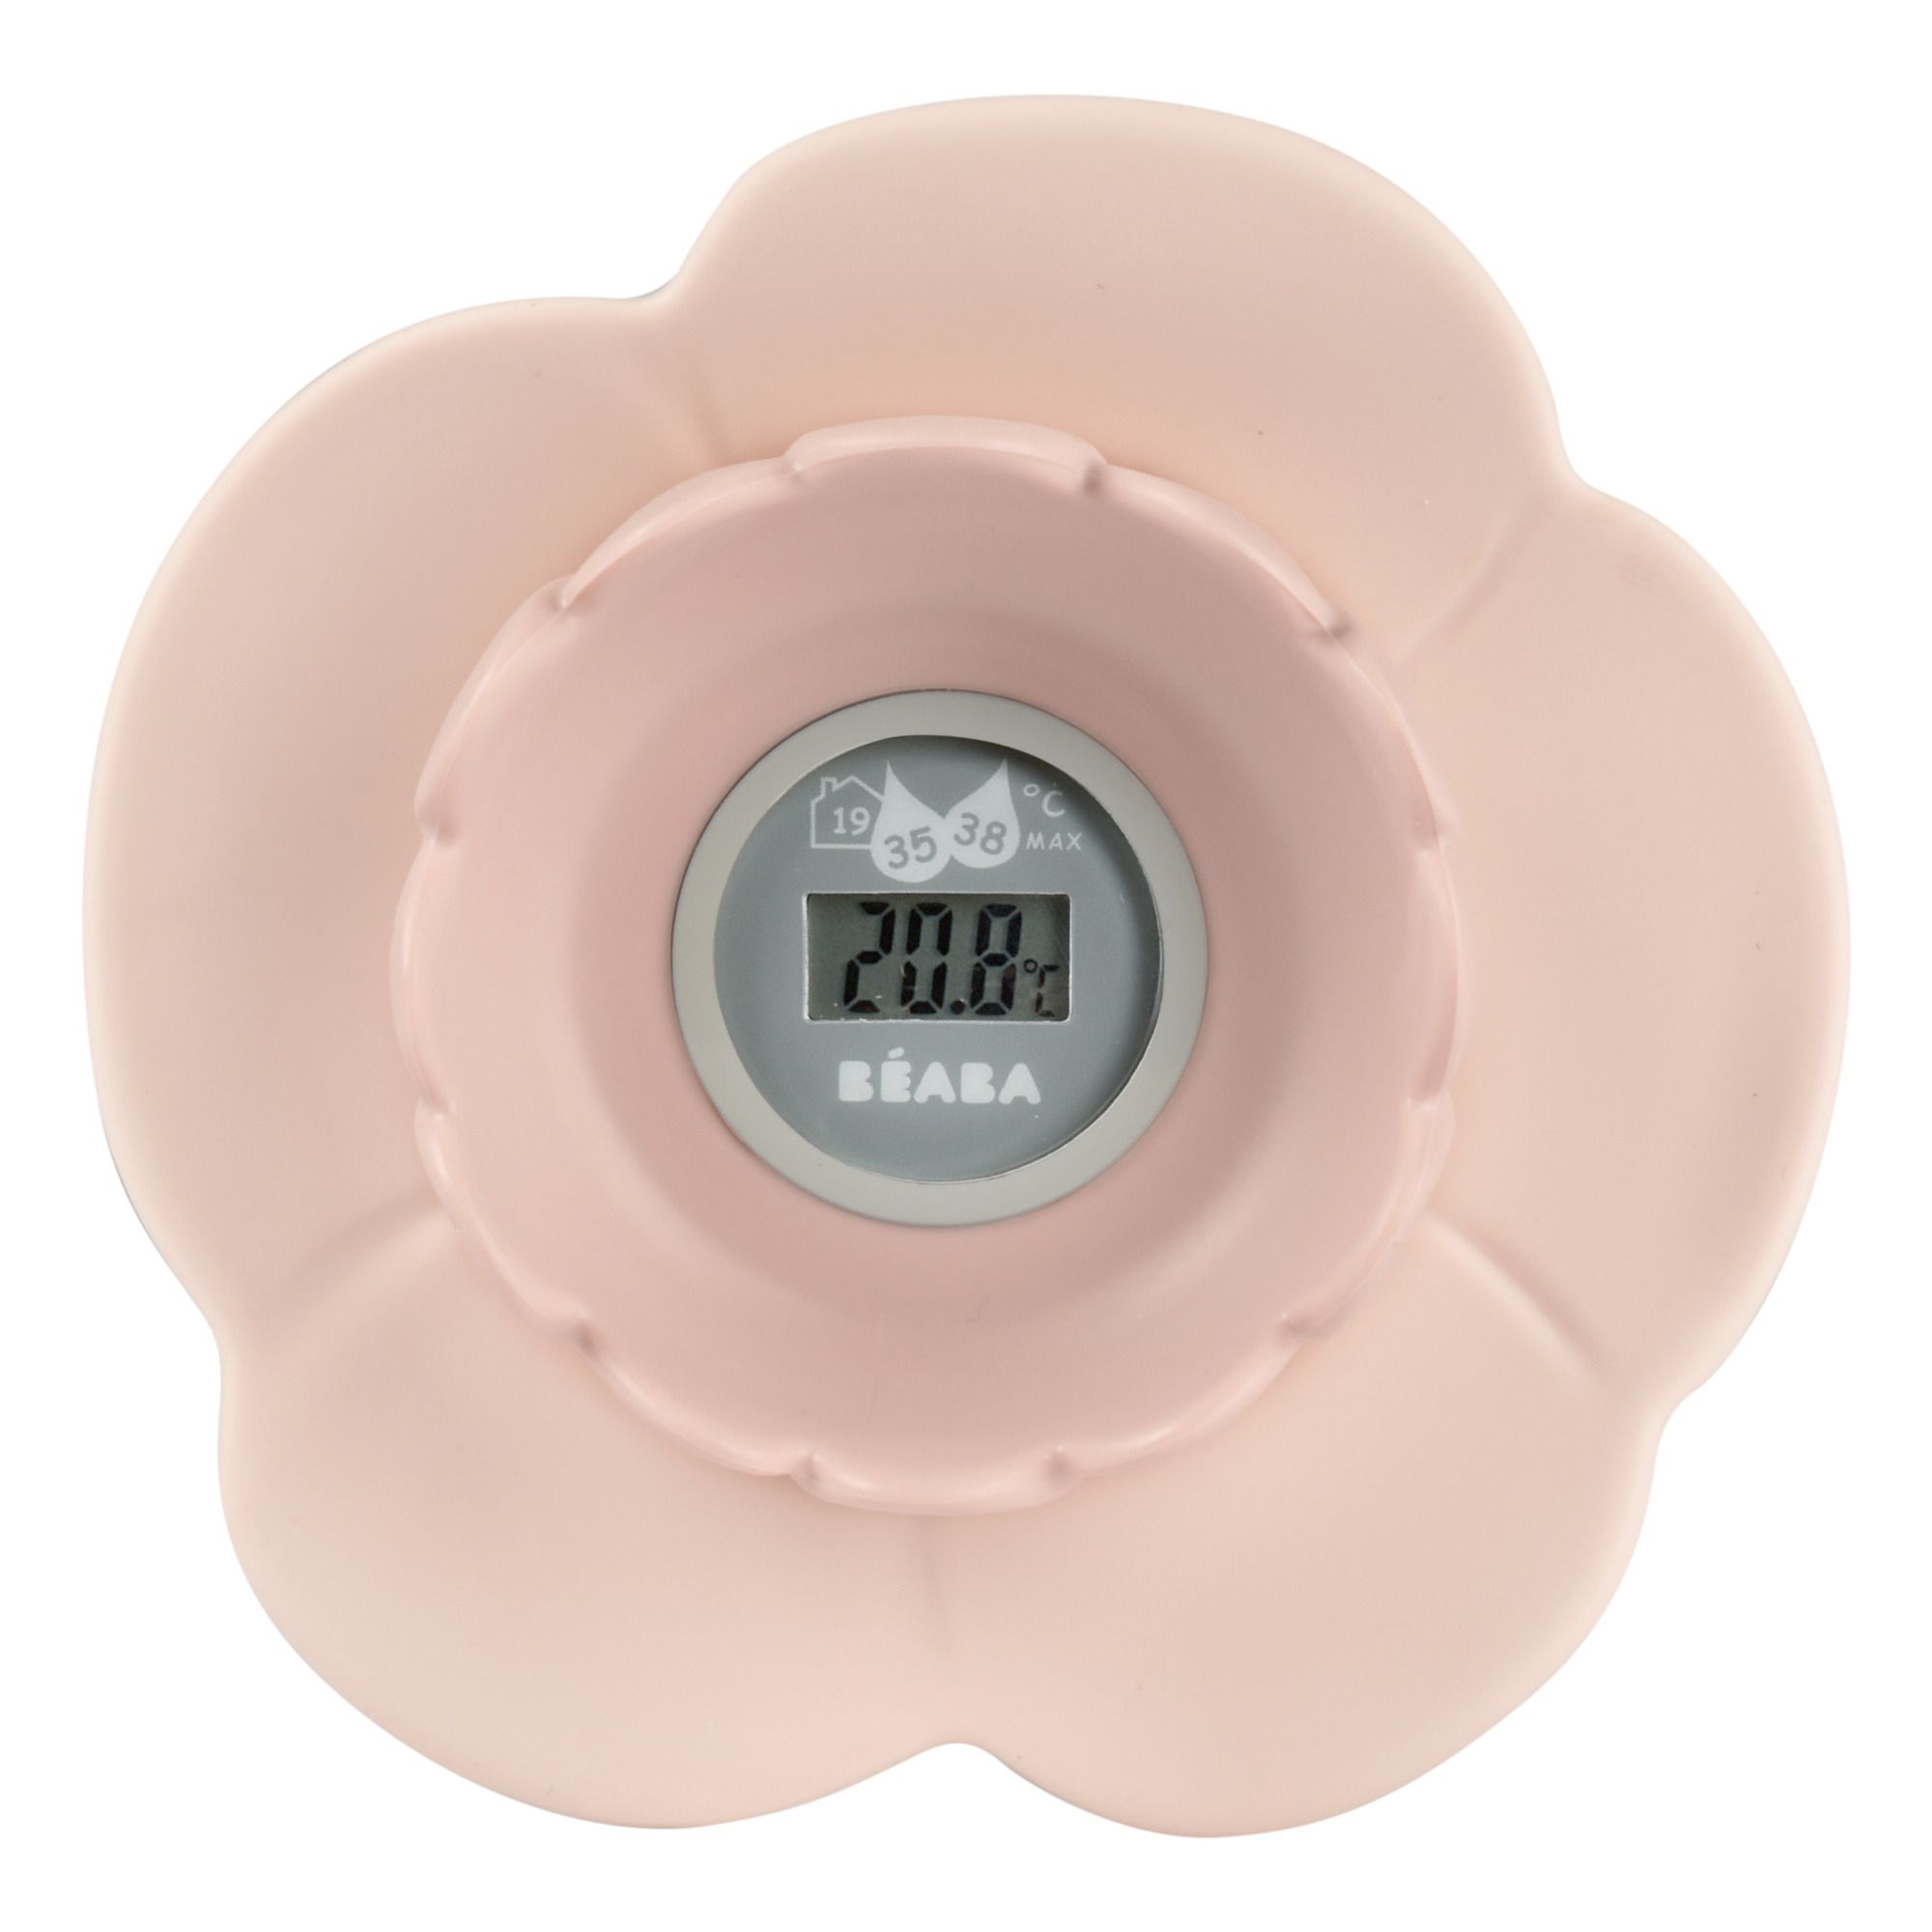 Béaba - Thermomètre de bain Lotus - Rose